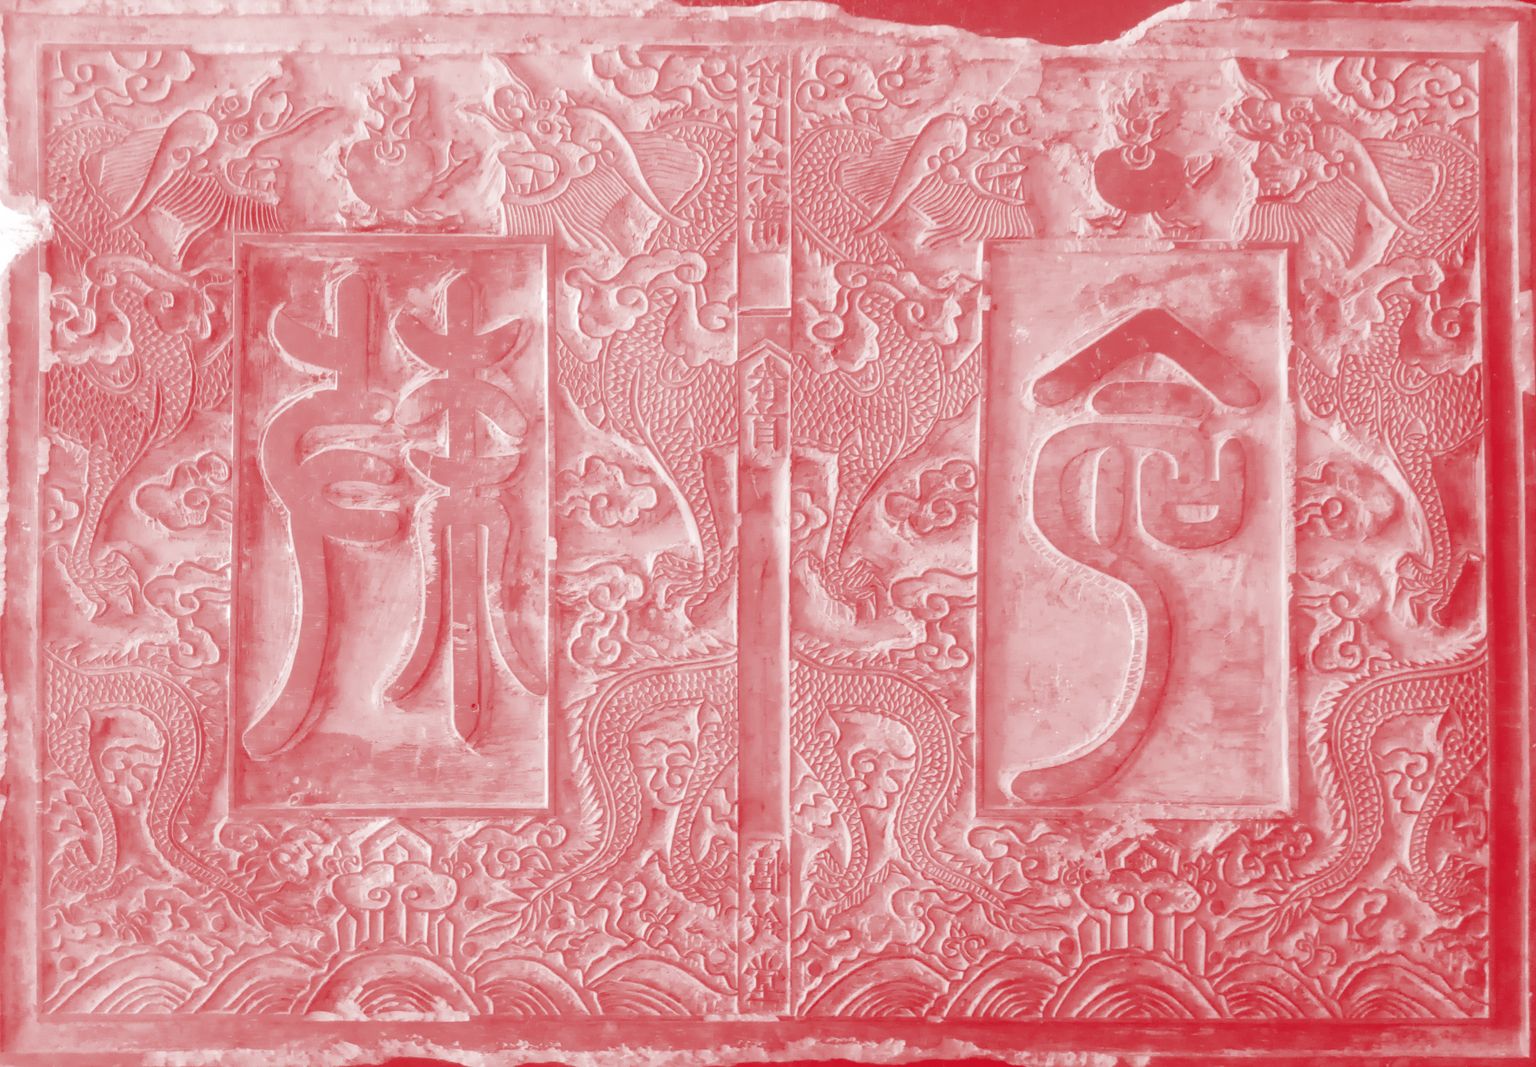 Planche d’une page d’une généalogie de Huizhou, avec des traces d’encre.